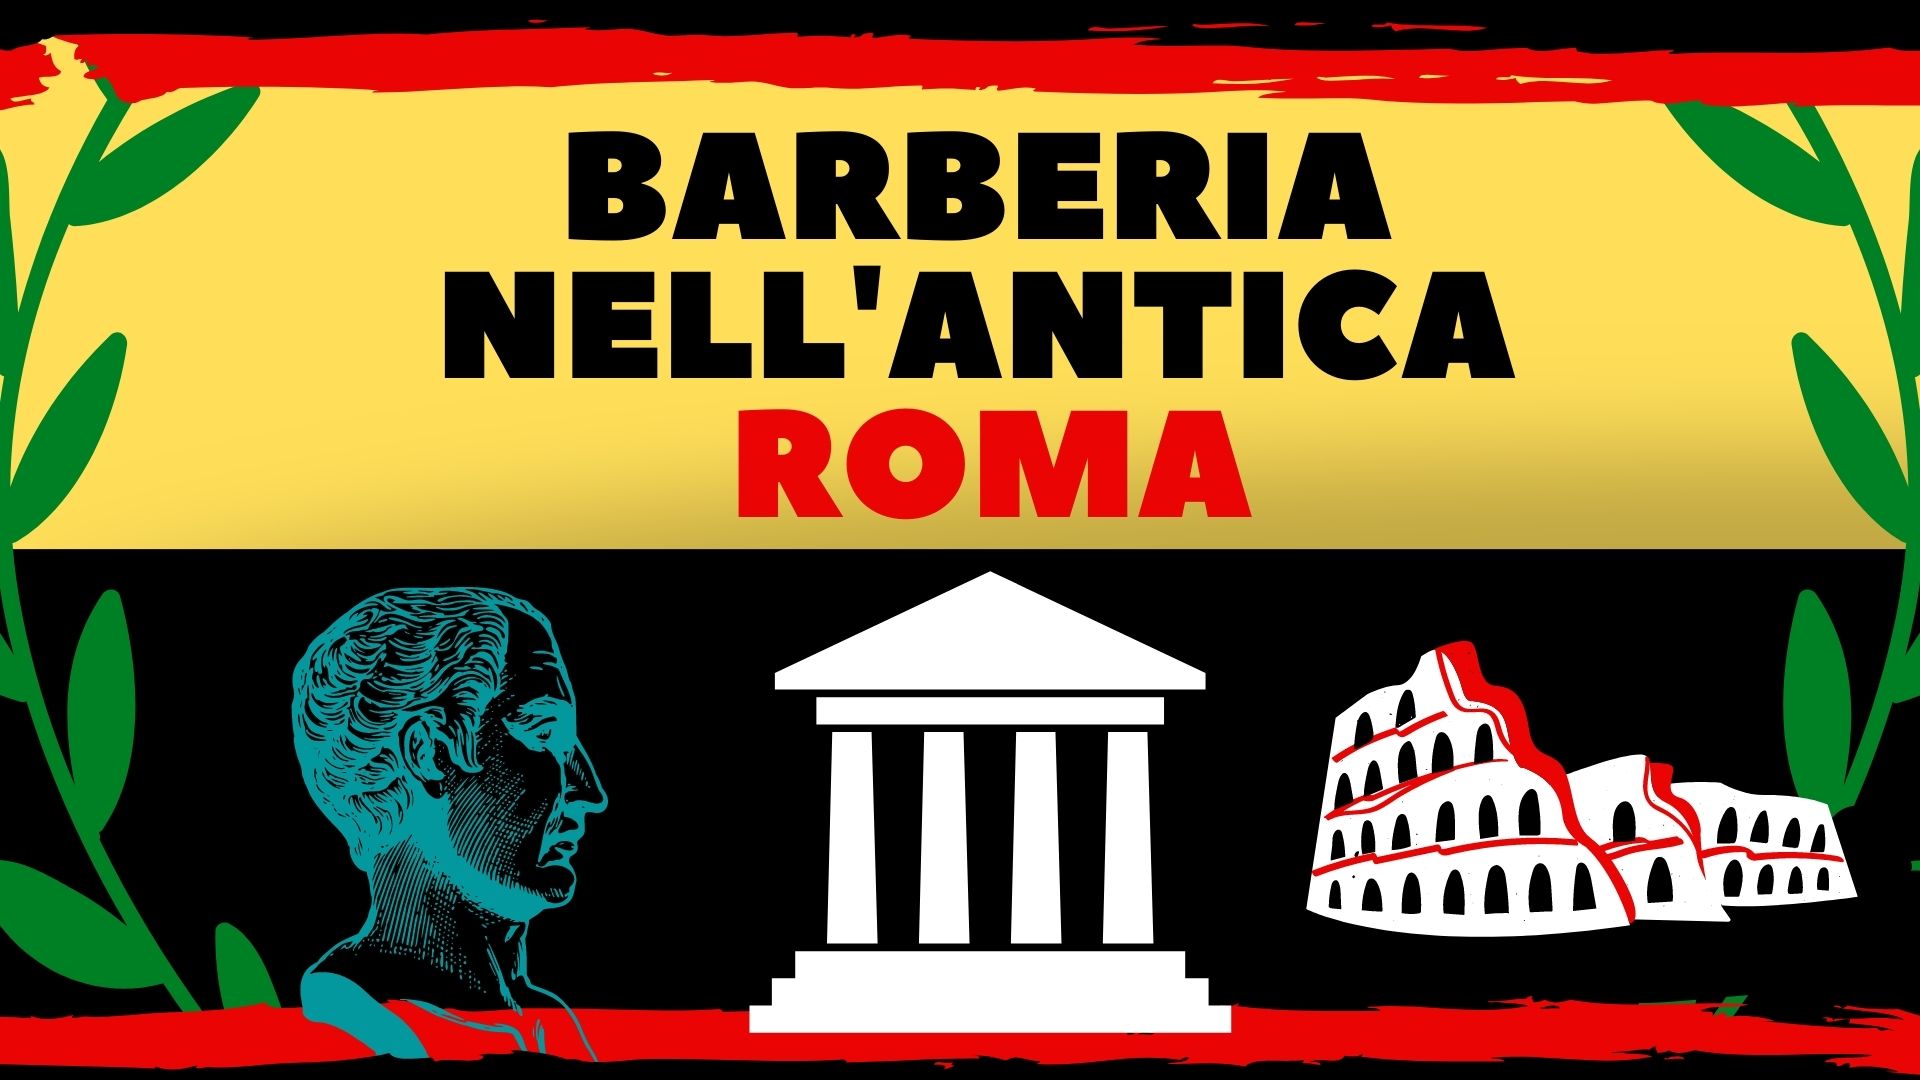 Barberia nell'antica roma